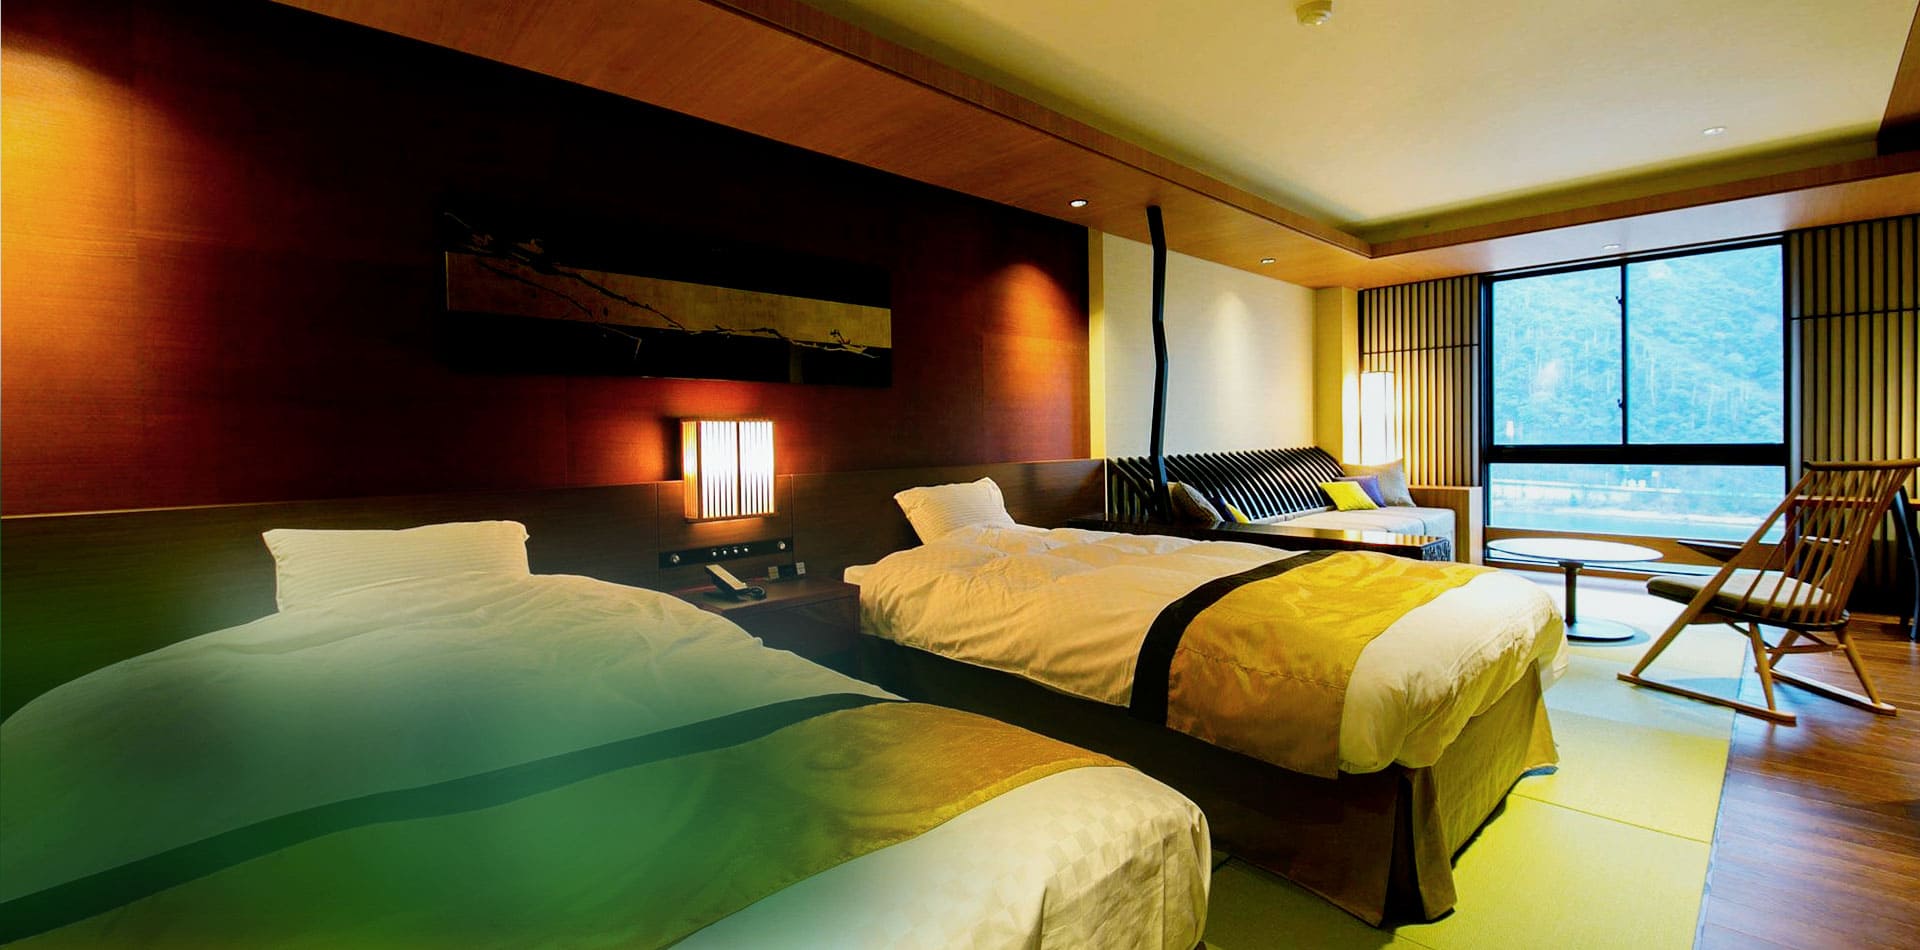 信长的岐阜城、绿意盎然的金华山、清澈的长良川河畔 坐拥丰富自然美景的度假酒店